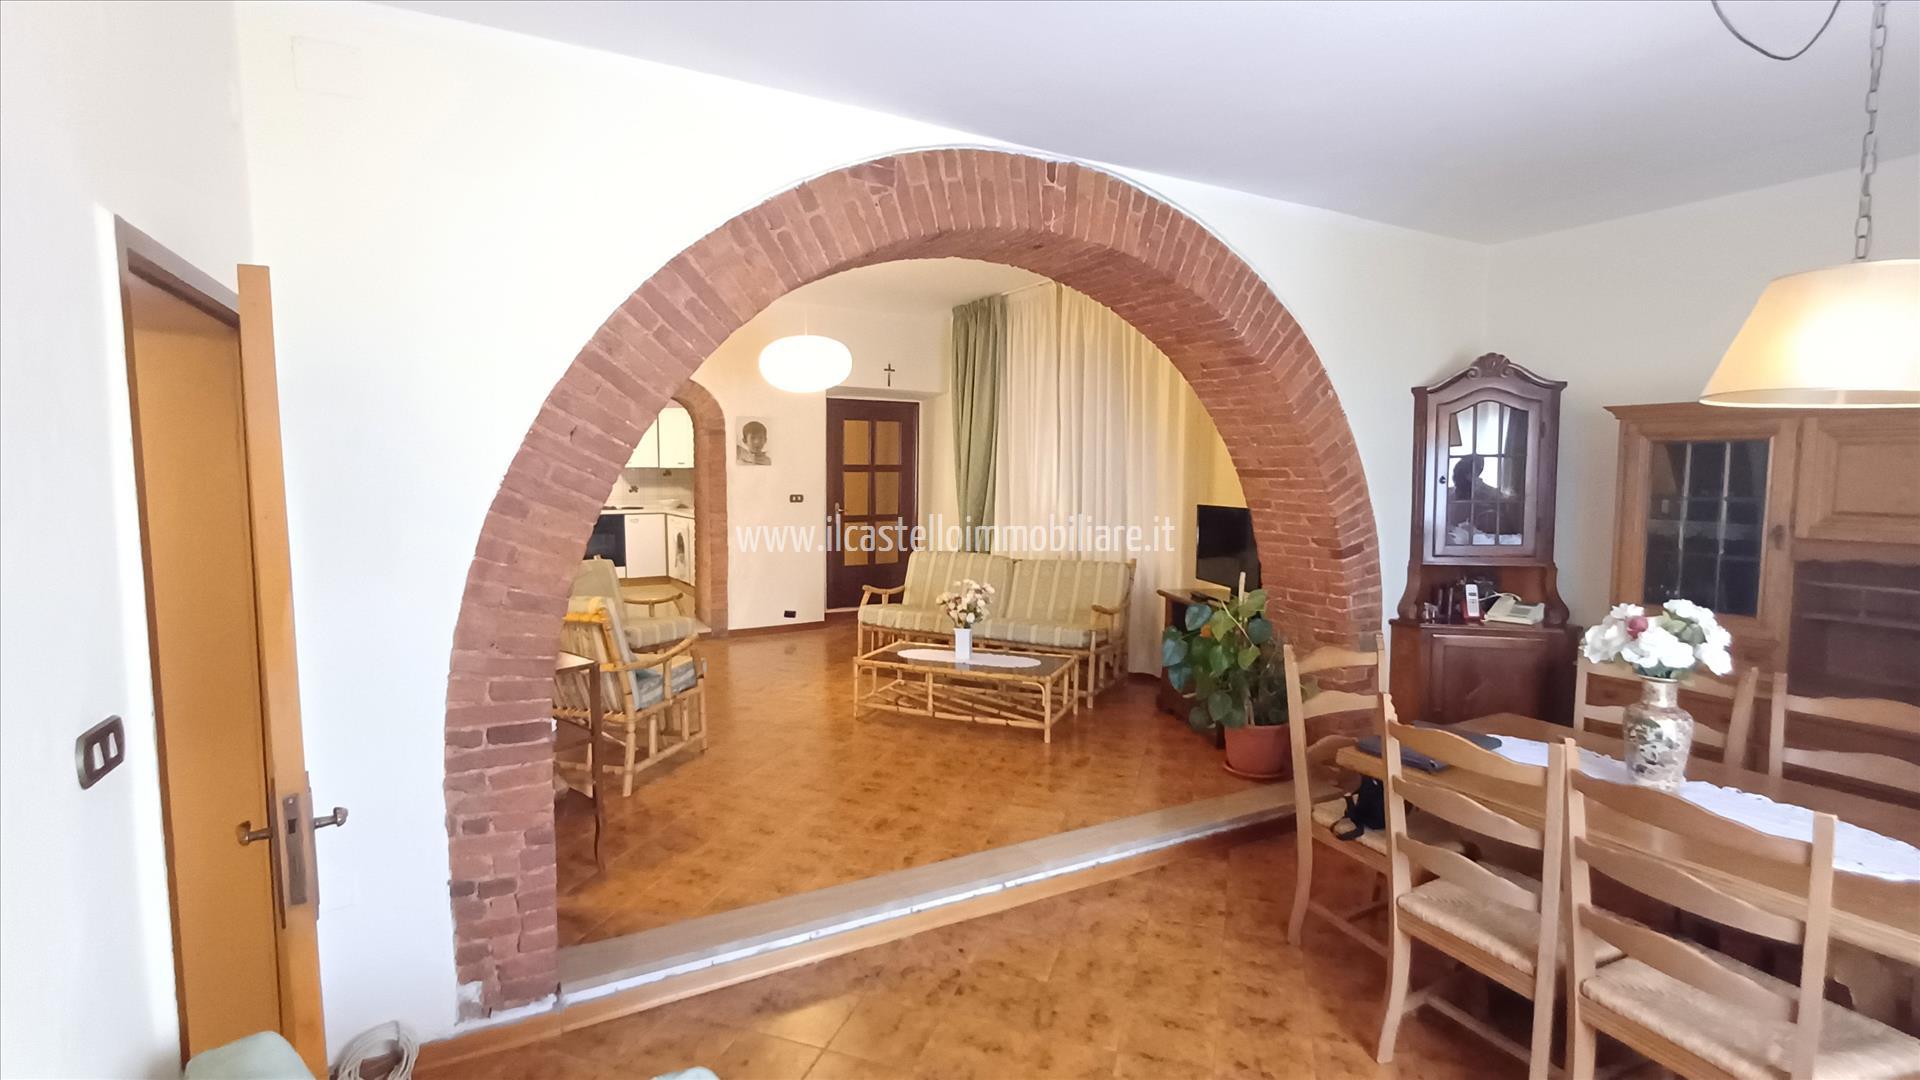 Appartamento in vendita a Sinalunga, 2 locali, prezzo € 107.000 | PortaleAgenzieImmobiliari.it